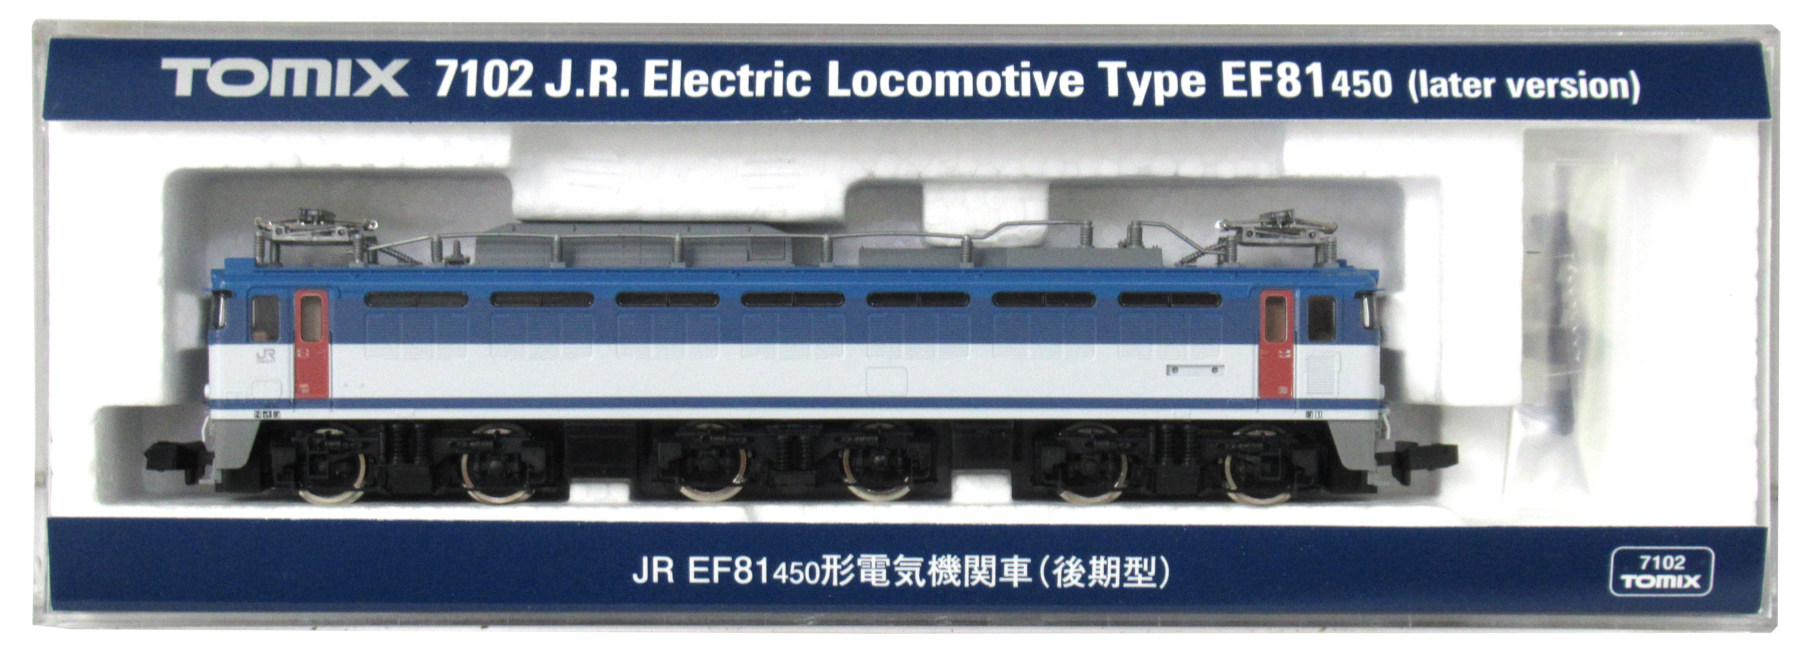 ＴOMIX◇JR EF81 450形 電気機関車(後期型) 【7102】◇新品未使用品 